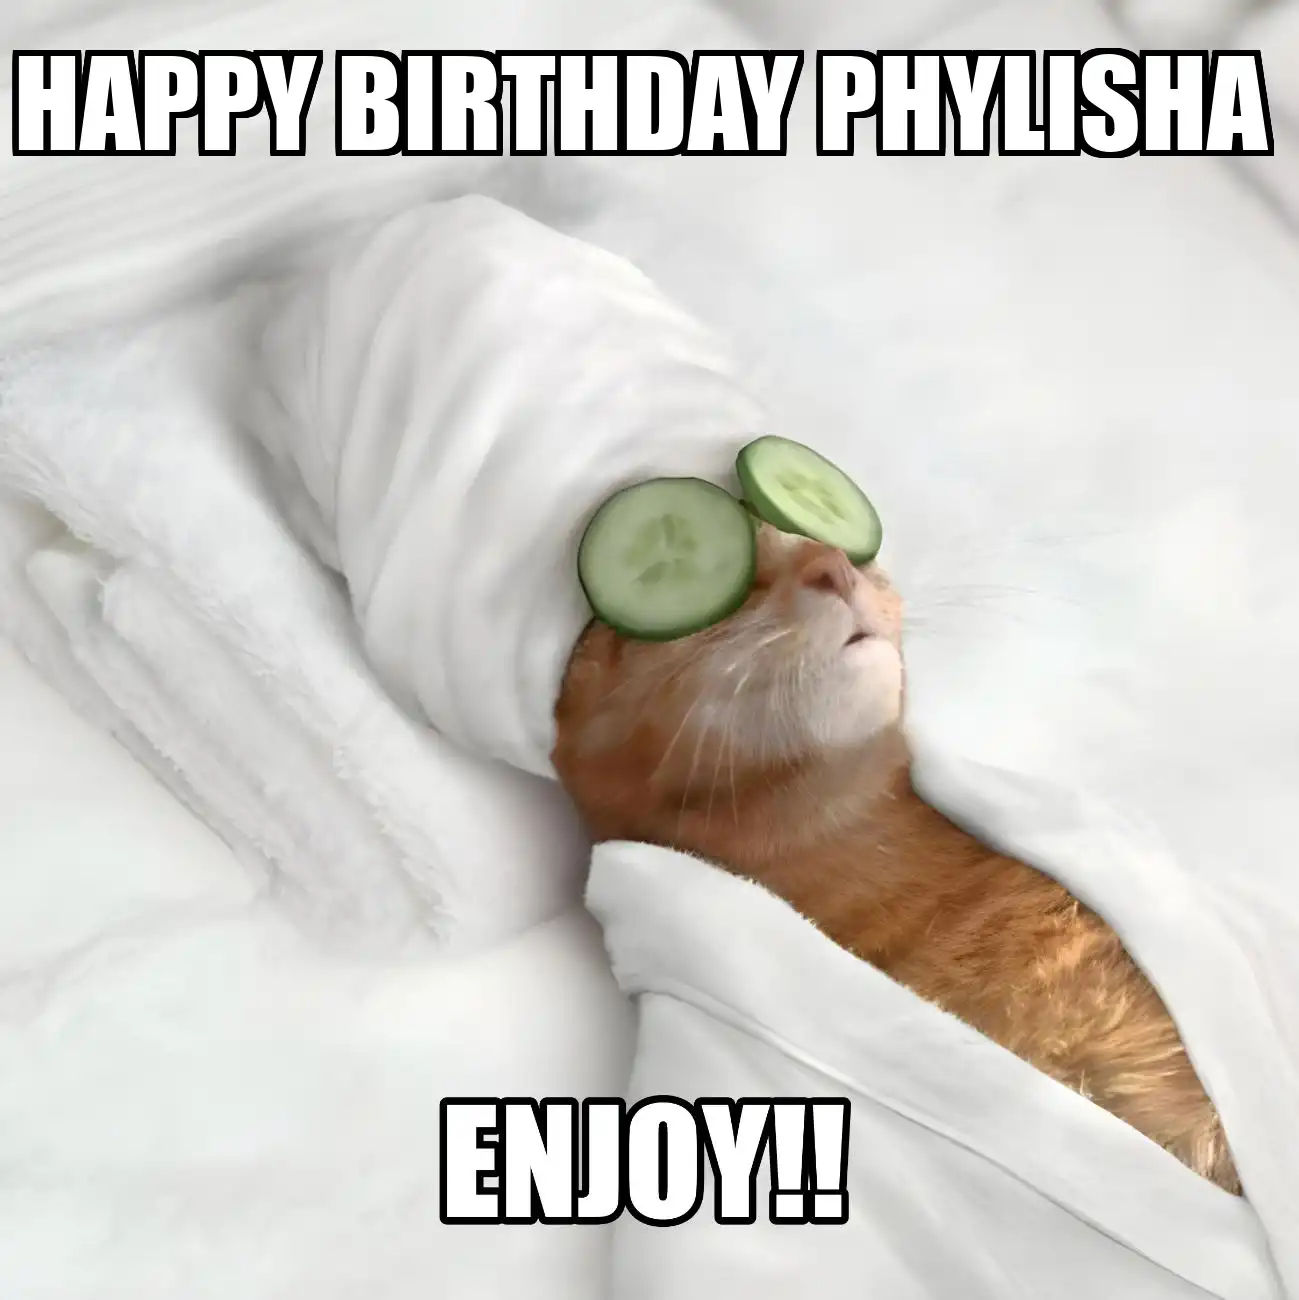 Happy Birthday Phylisha Enjoy Cat Meme